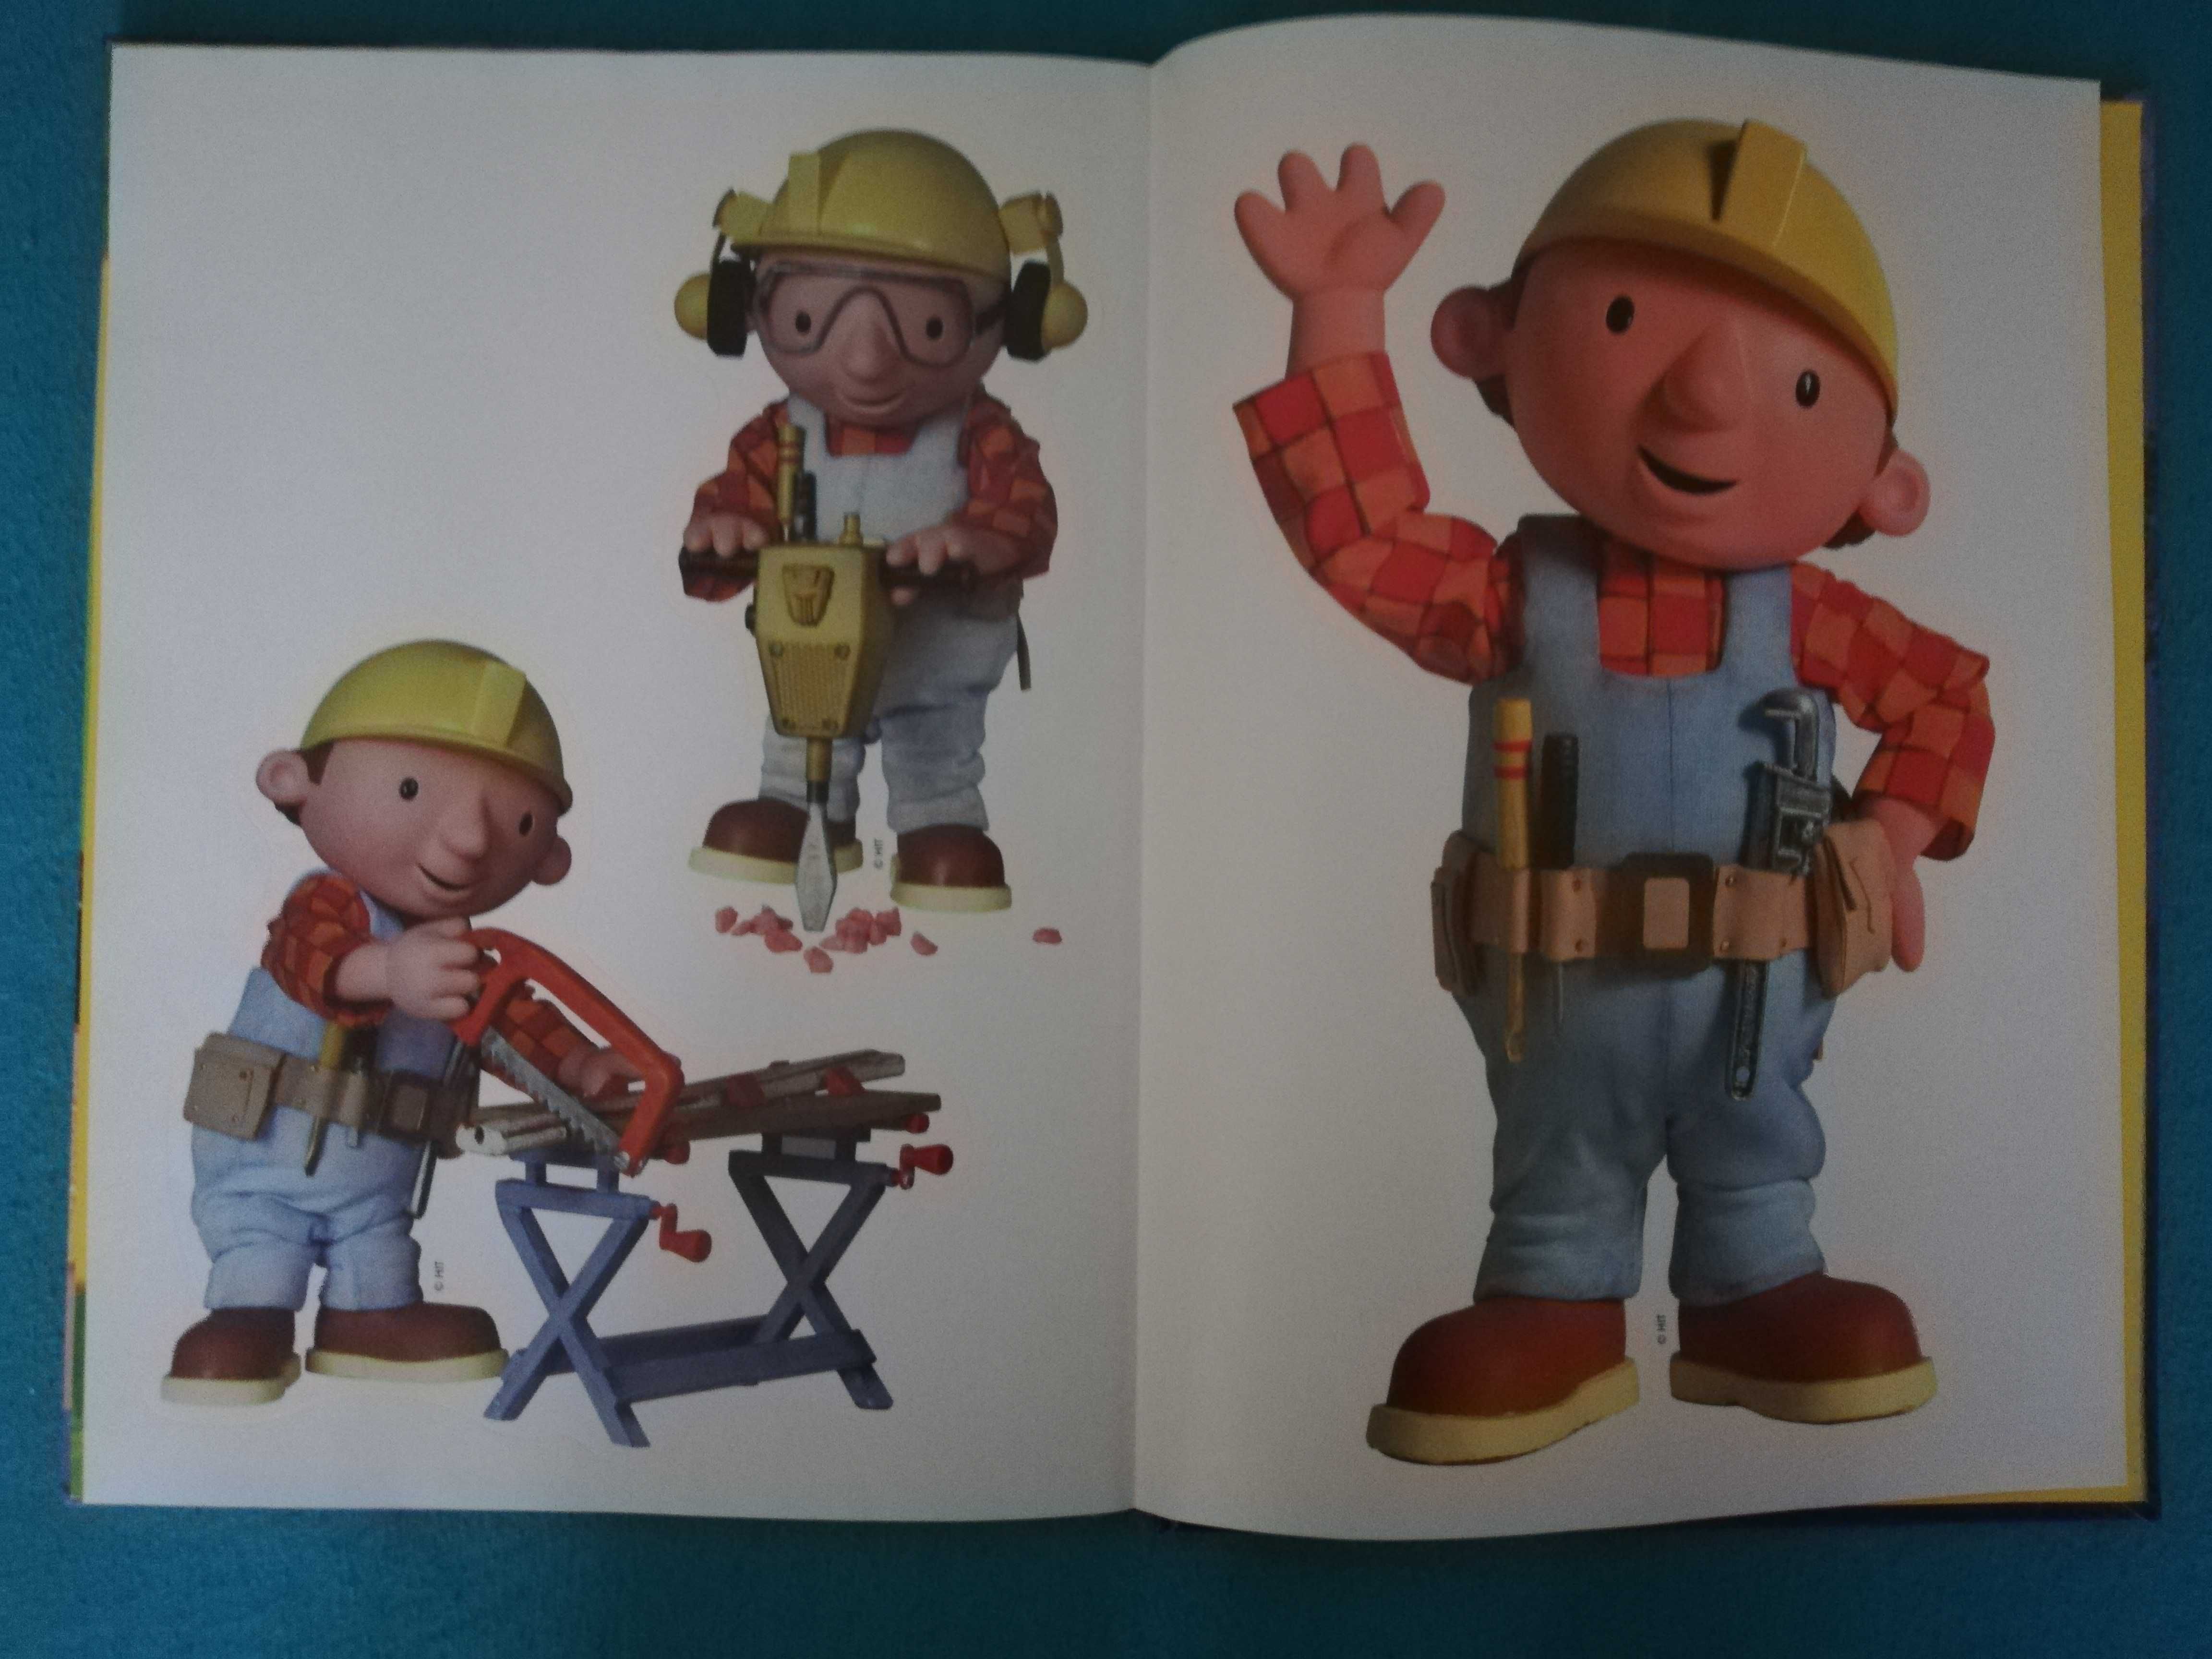 Książka z naklejkami Bob budowniczy